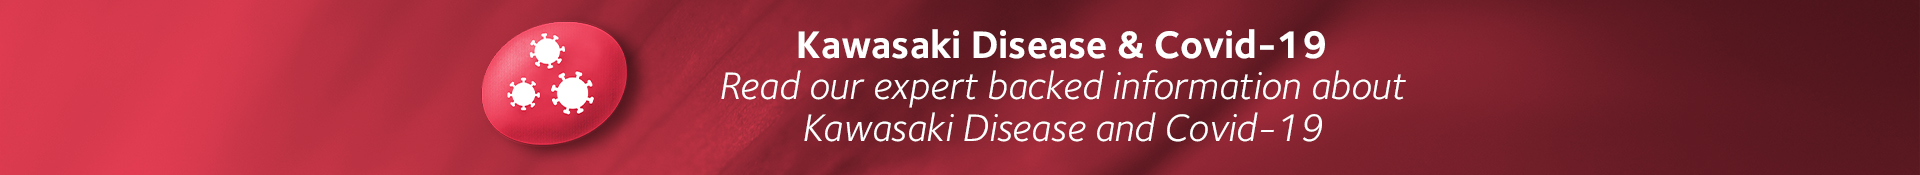 Kawasaki Disease & Covid-19